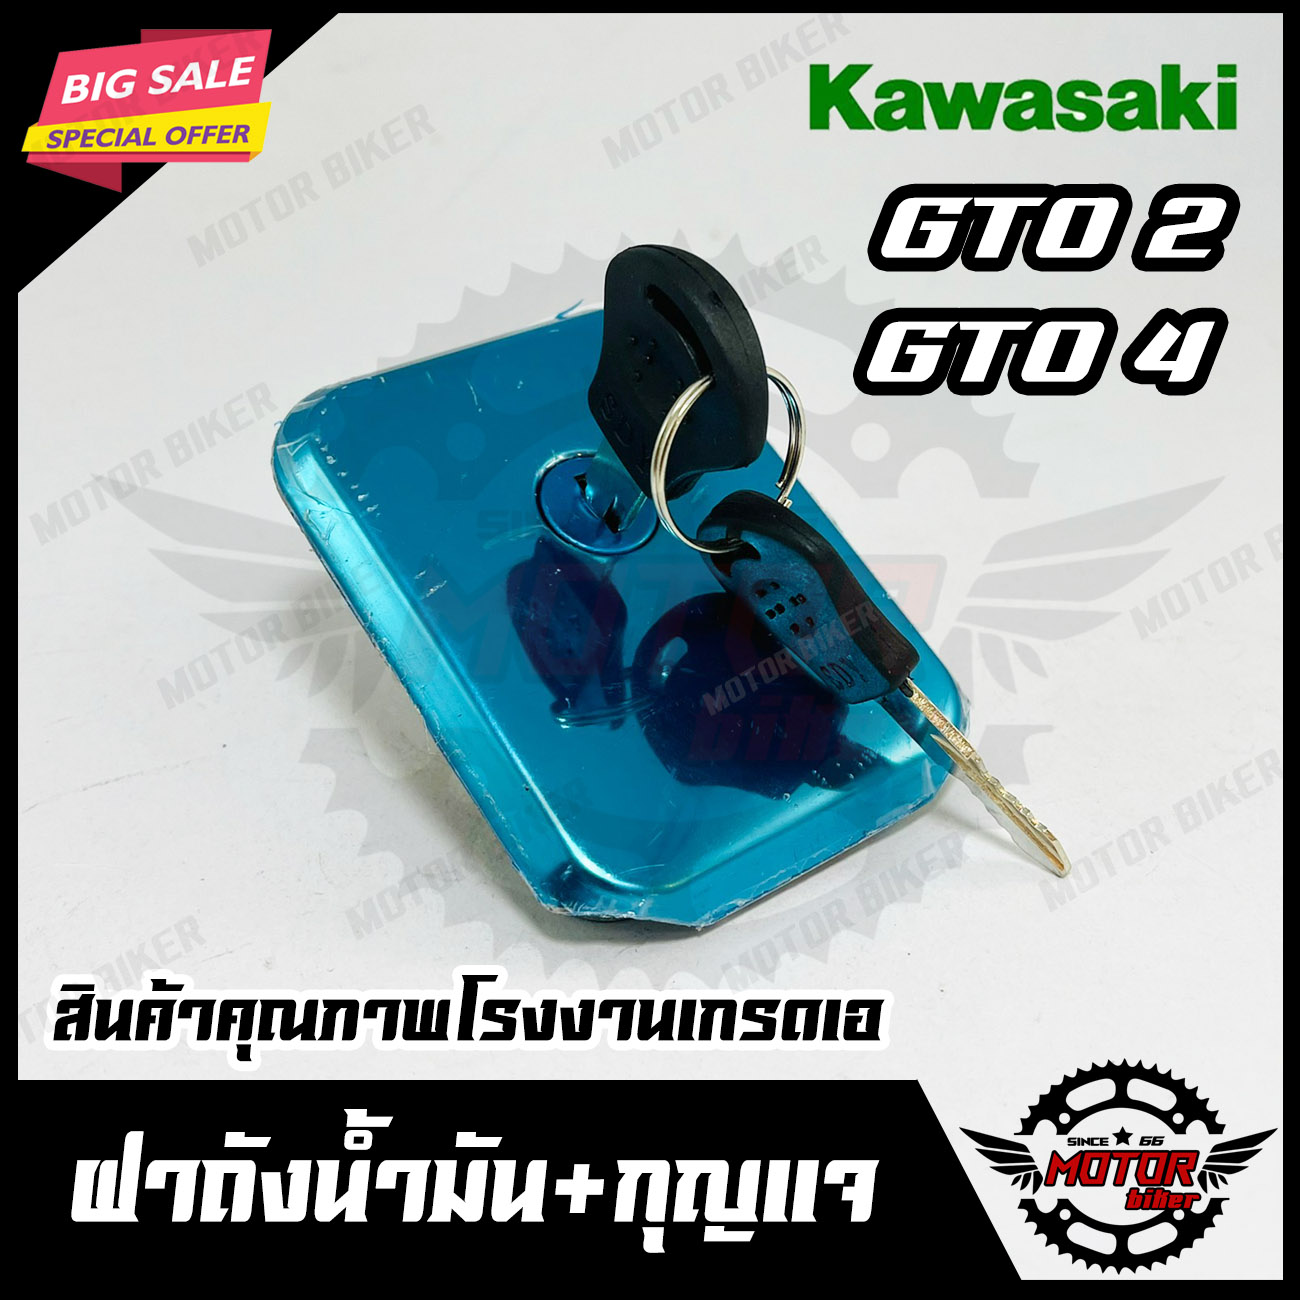 ฝาถังน้ำมัน+กุญแจ สำหรับ KAWASAKI GTO M2/ GTO M4 - คาวาซากิ จีทีโอ มาท2/ มาท4 สินค้าคุณภาพโรงงานเกรดเอ รับประกันคุณภาพสูง 100%